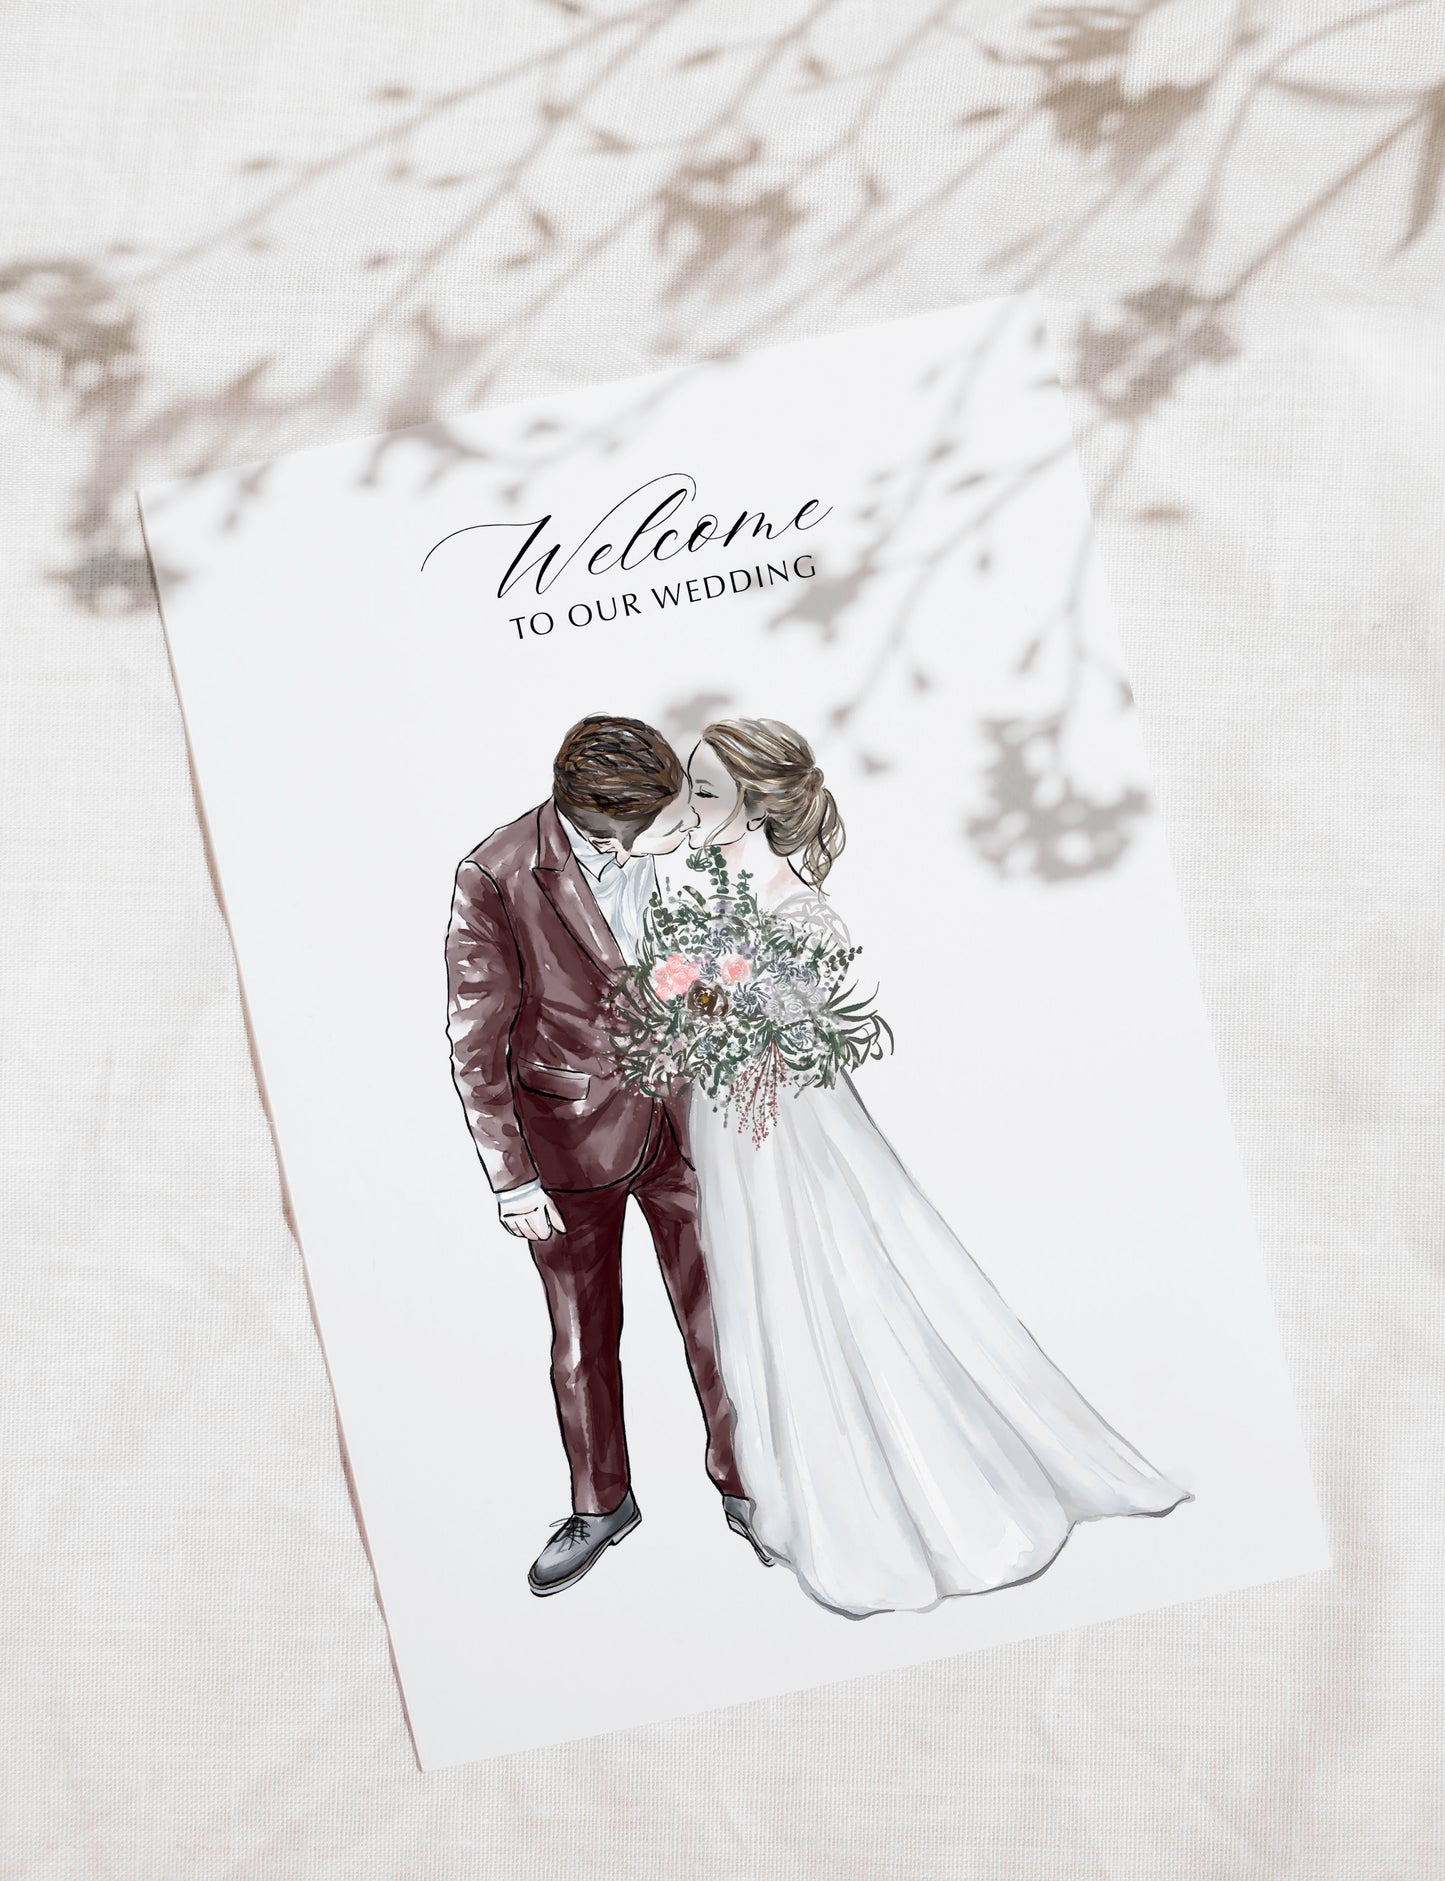 Custom Wedding Couple Portrait Illustration | Custom Digital Portrait Illust